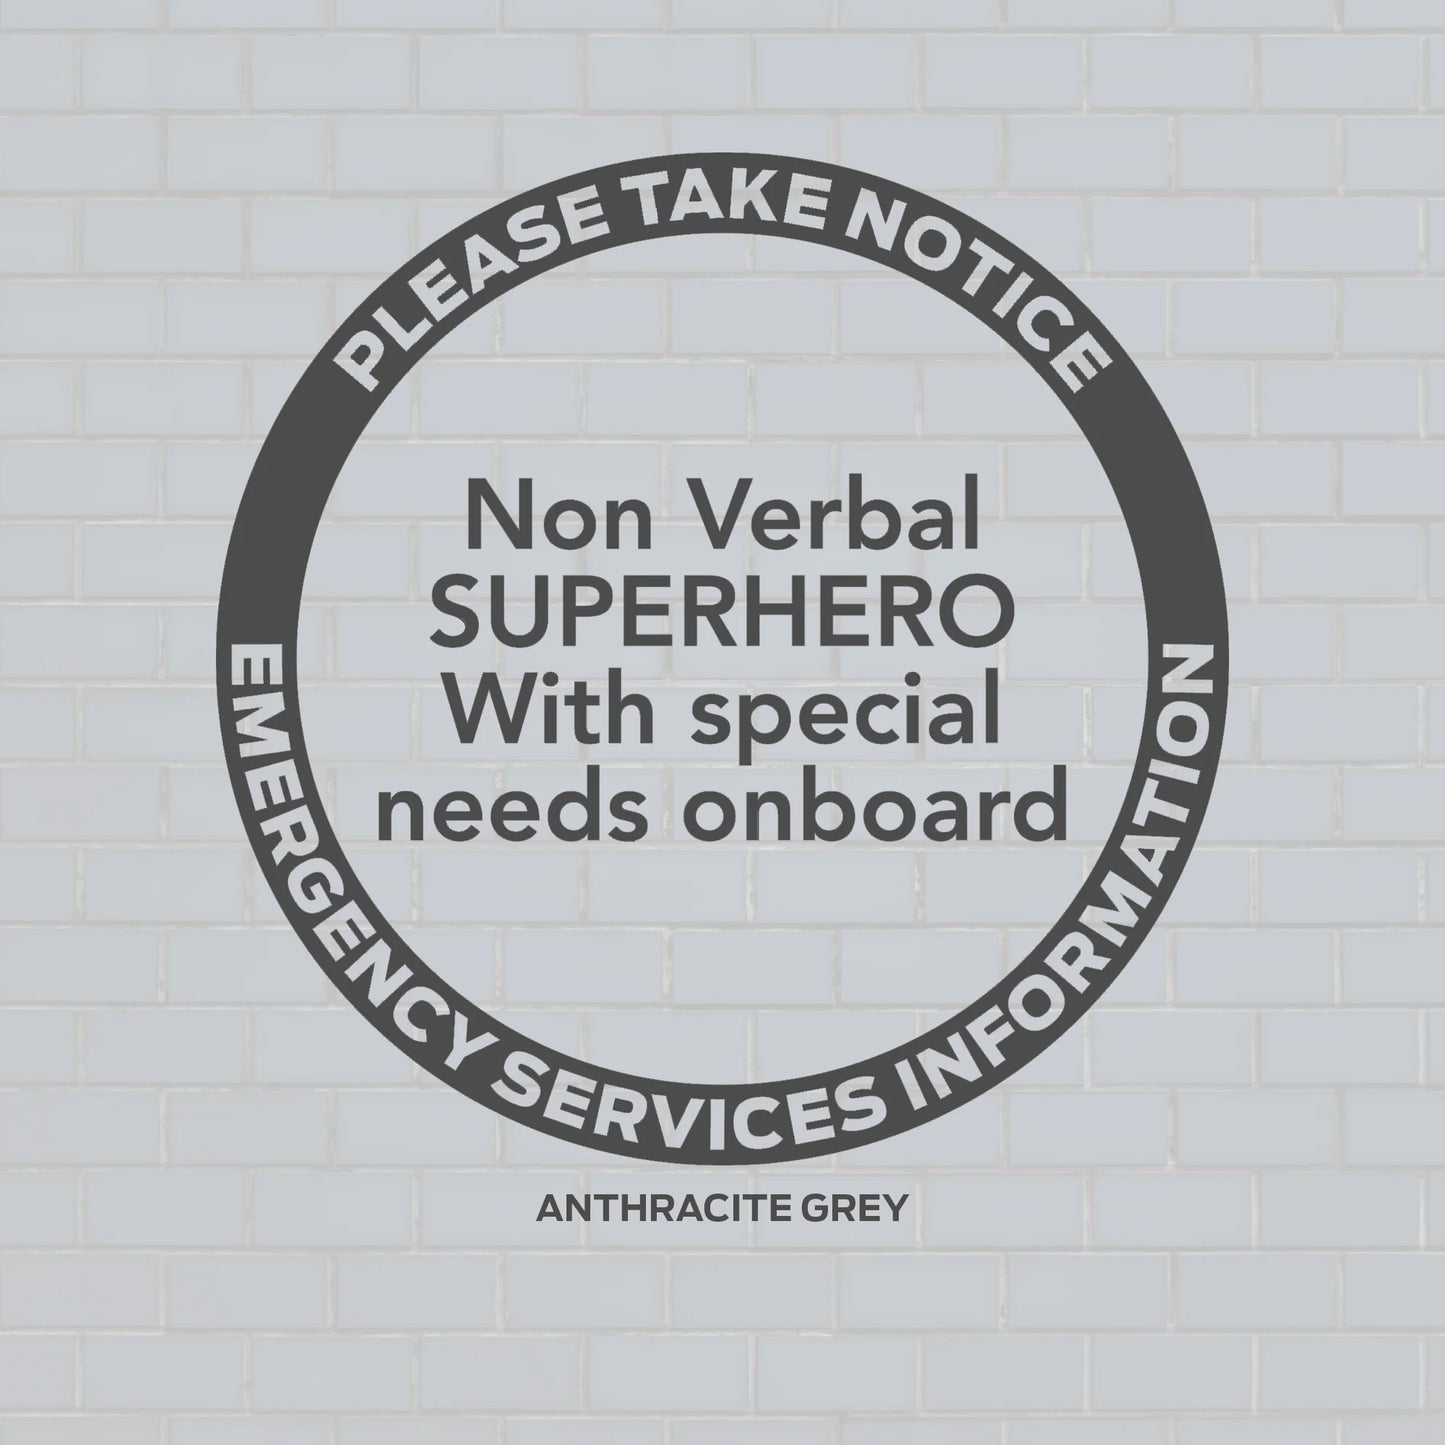 Non Verbal Disability Decal, Emergency Services Notice, Non Verbal superhero